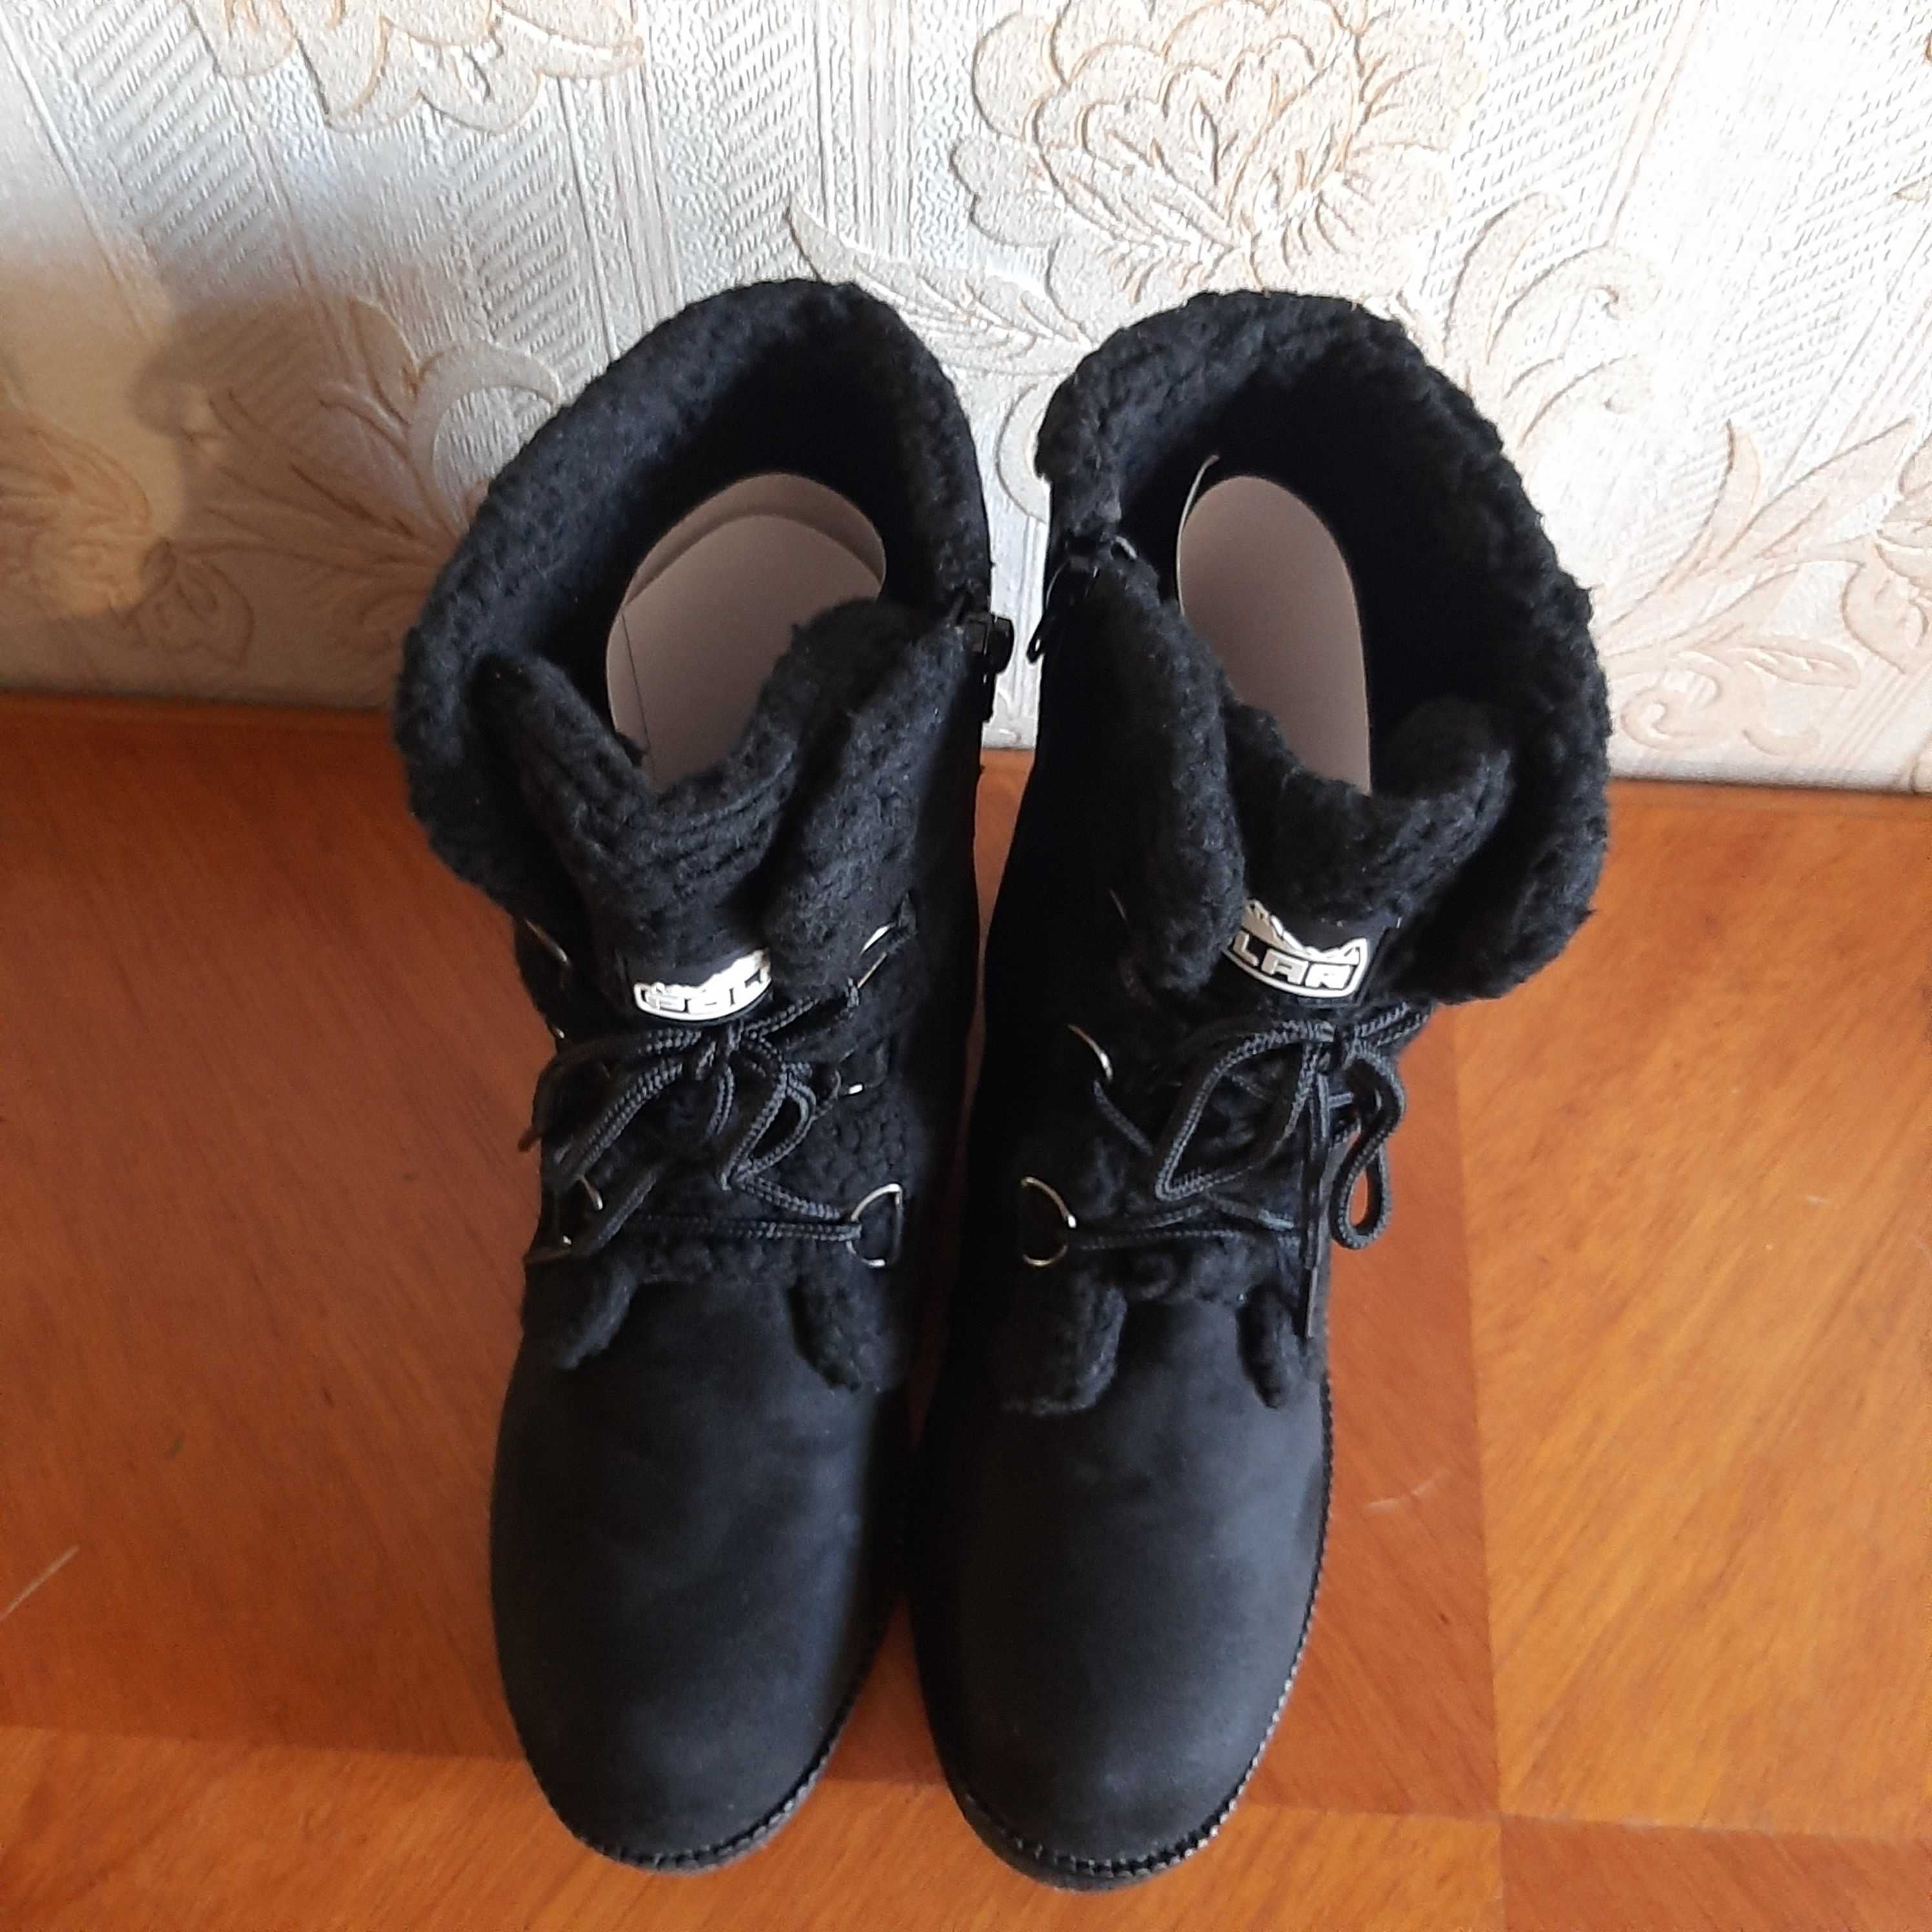 Сапоги ботинки зимние женские POLAR р. 40 стелька 26см.